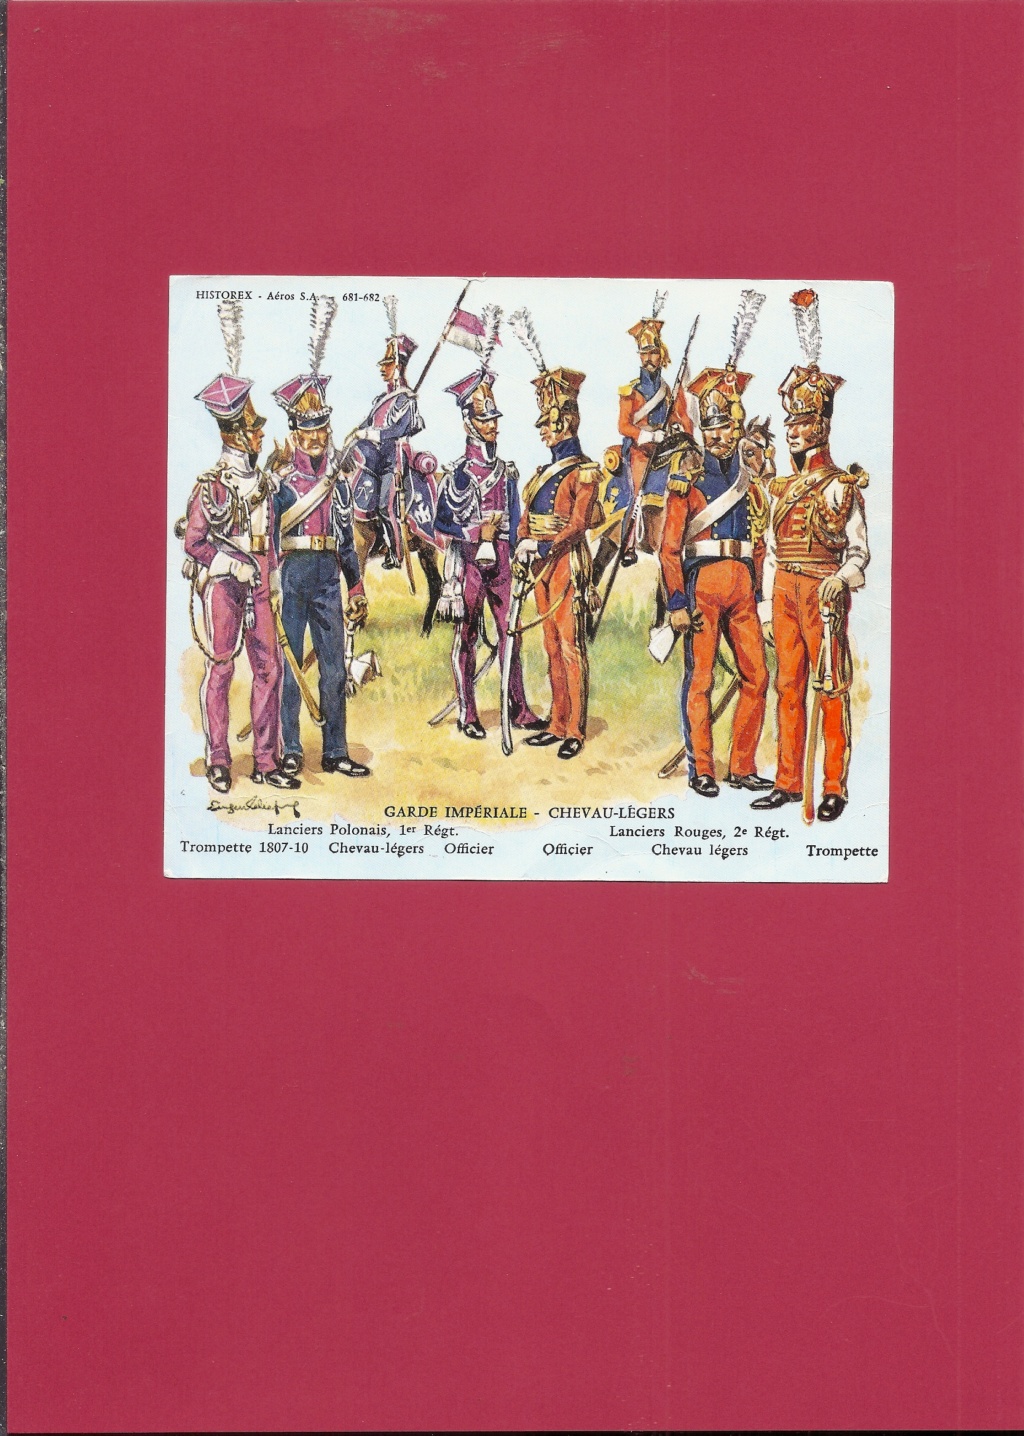 [HISTOREX] 1er Régiment de Chevau-légers Lanciers polonais de la Garde Impériale 1807 - 1814 1/30ème Réf 681 Numzo589